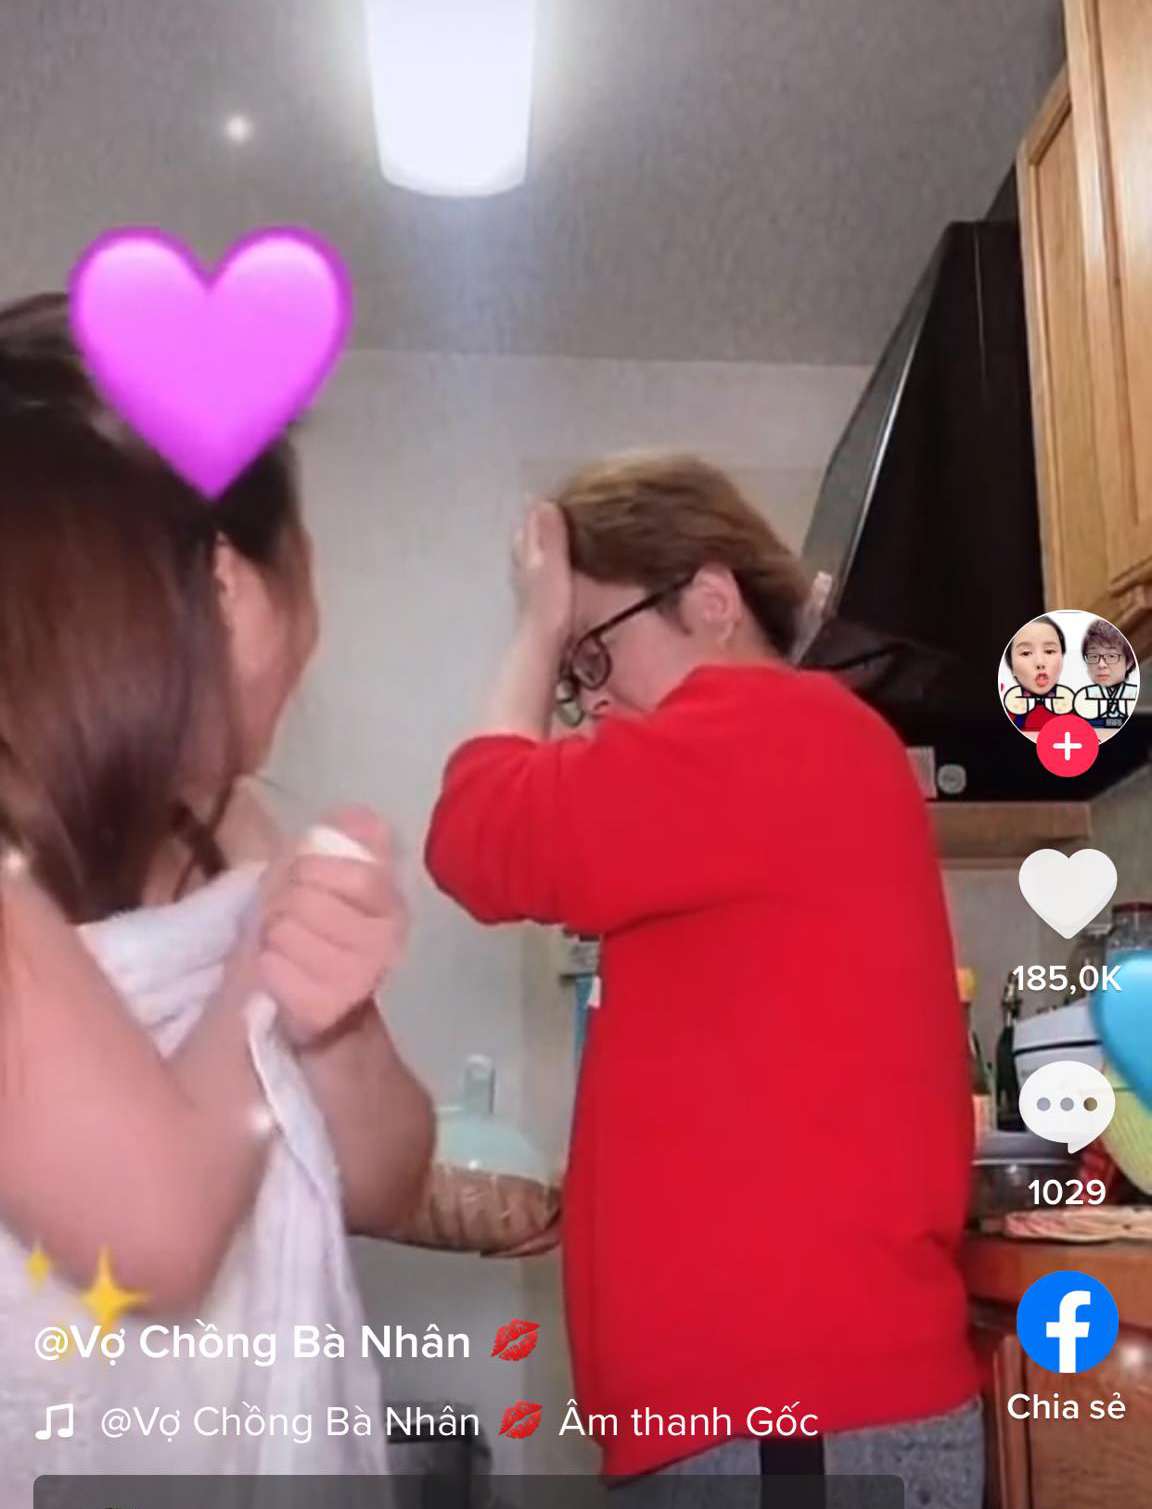 Bà Nhân Vlog lột đồ trước camera, phản ứng của chồng Nhật khiến fan cười ngất